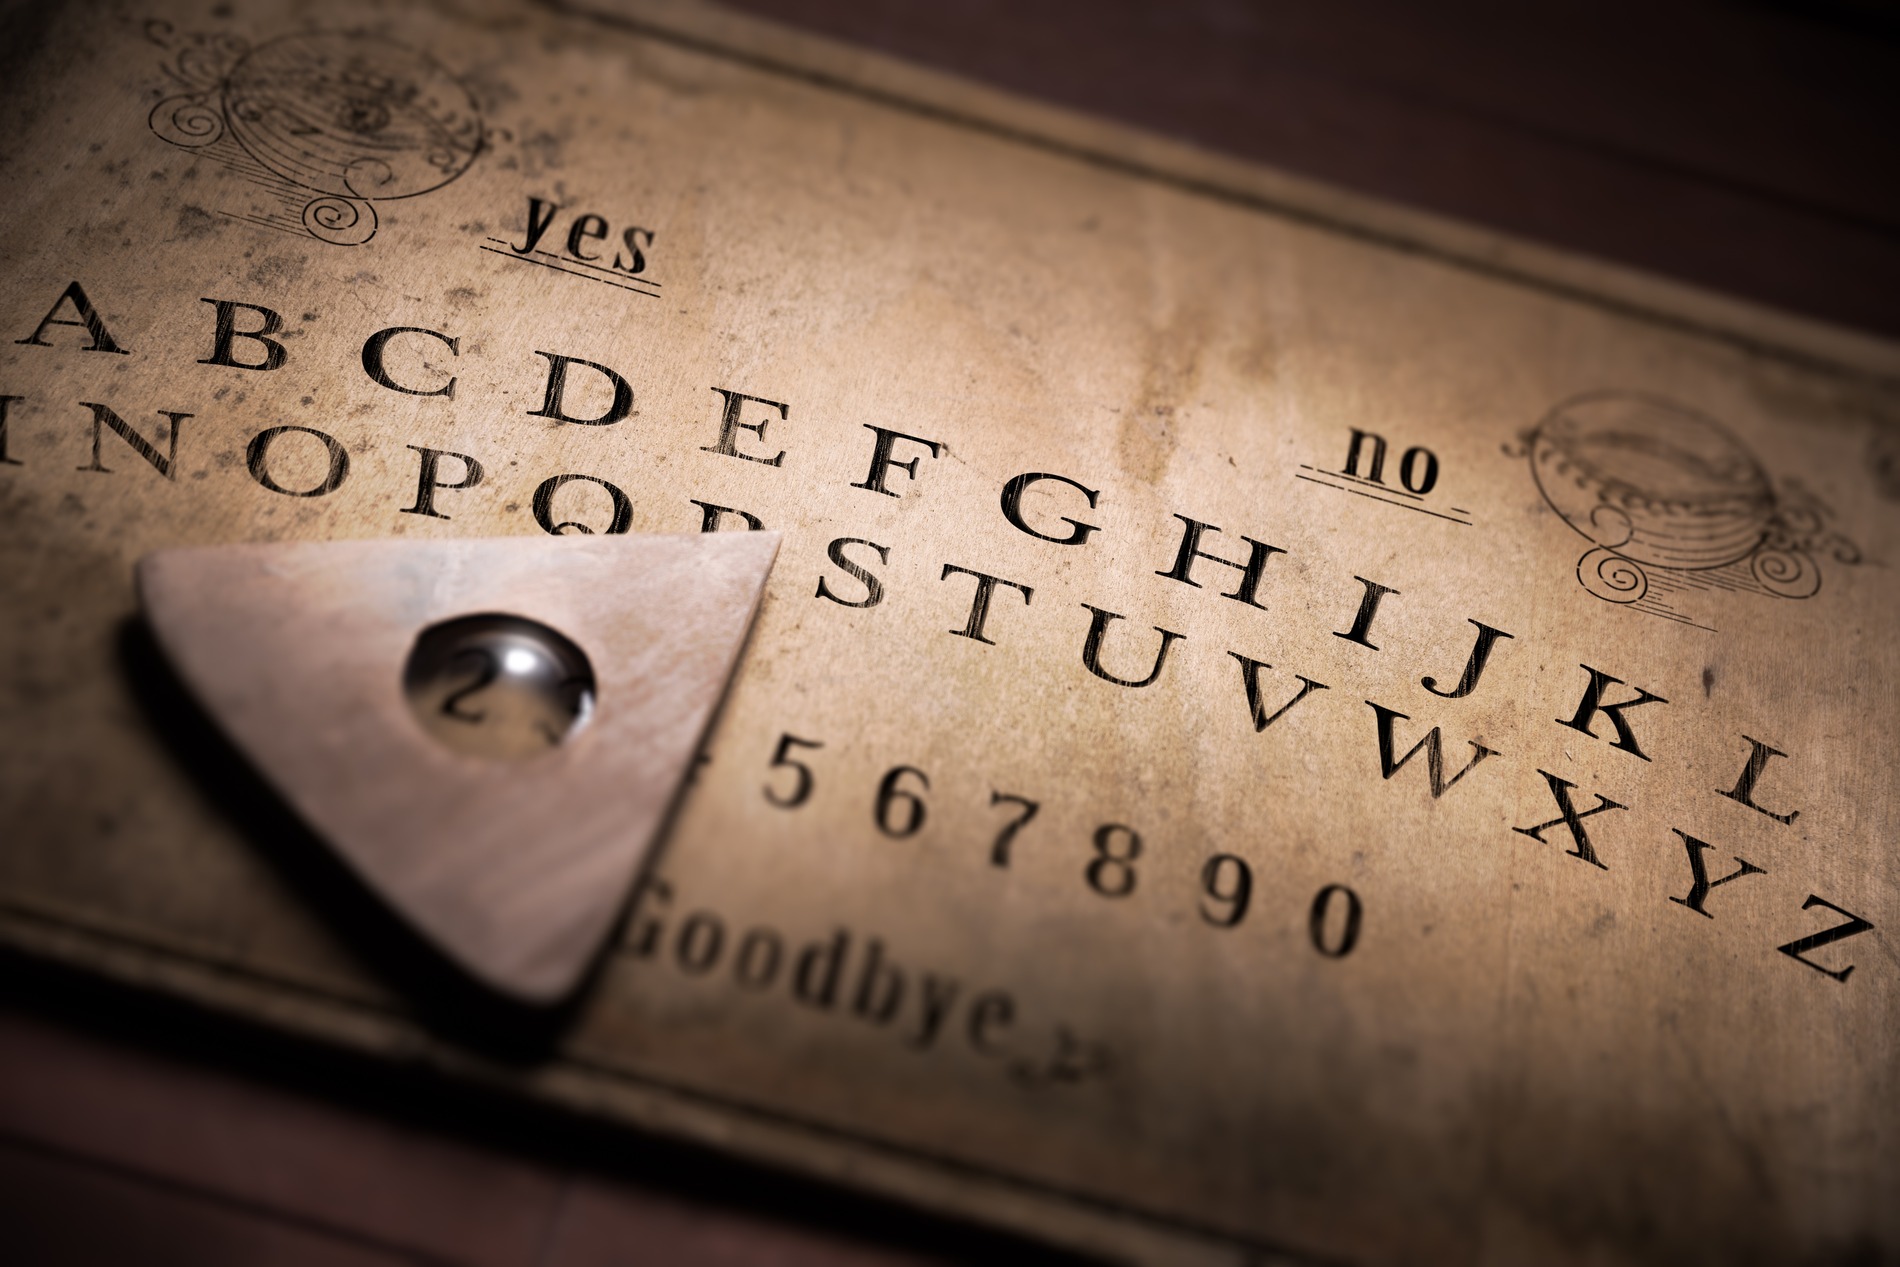 Nach Benutzung eines Ouija-Board: Kinder ohnmächtig aufgefunden